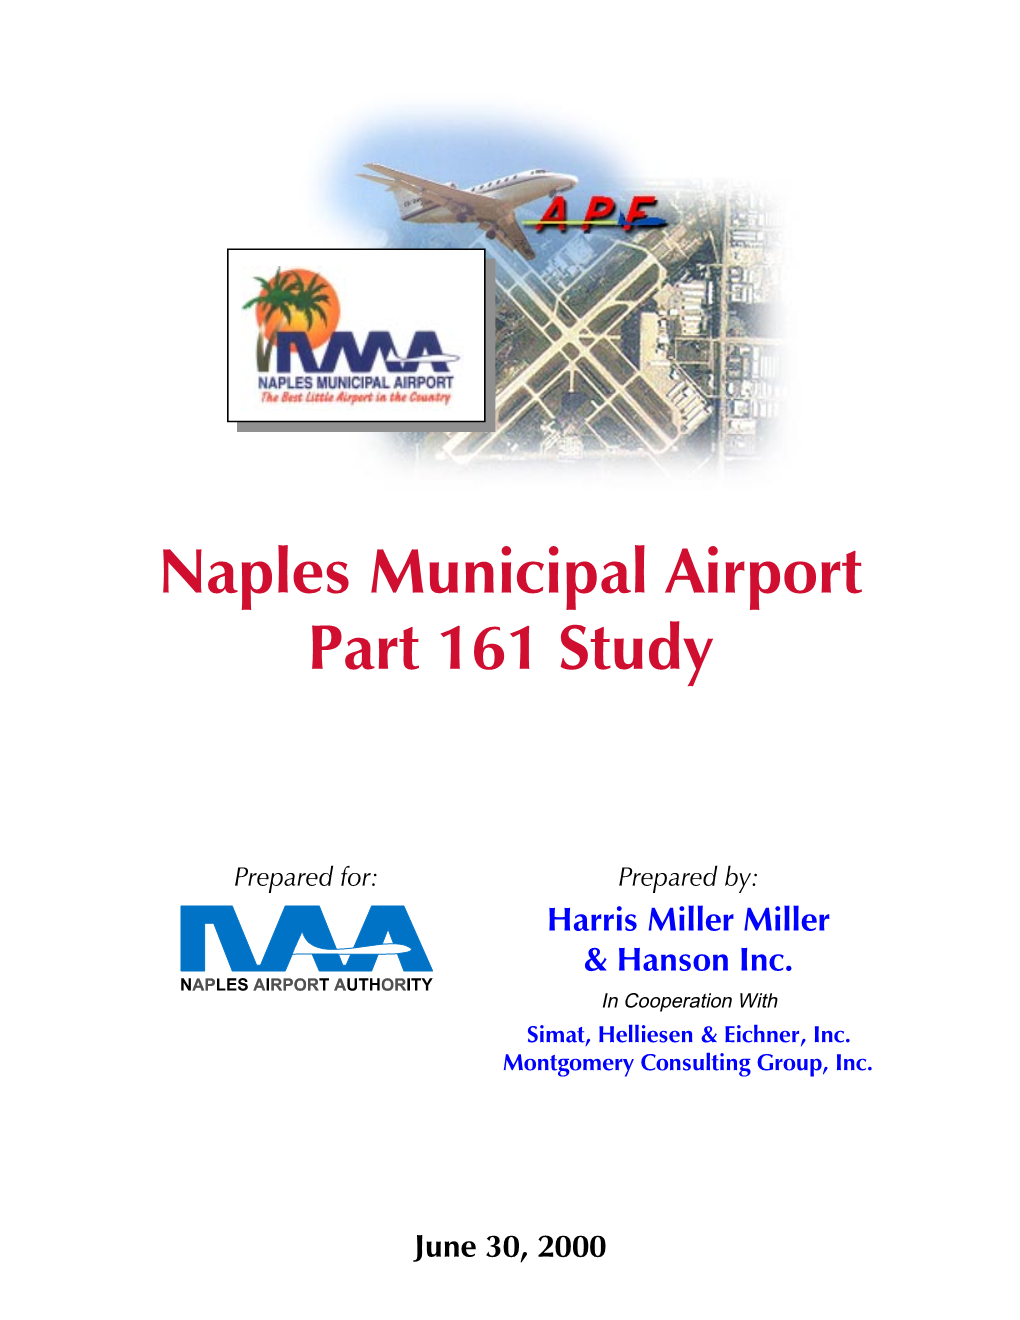 Naples Municipal Airport Part 161 Study